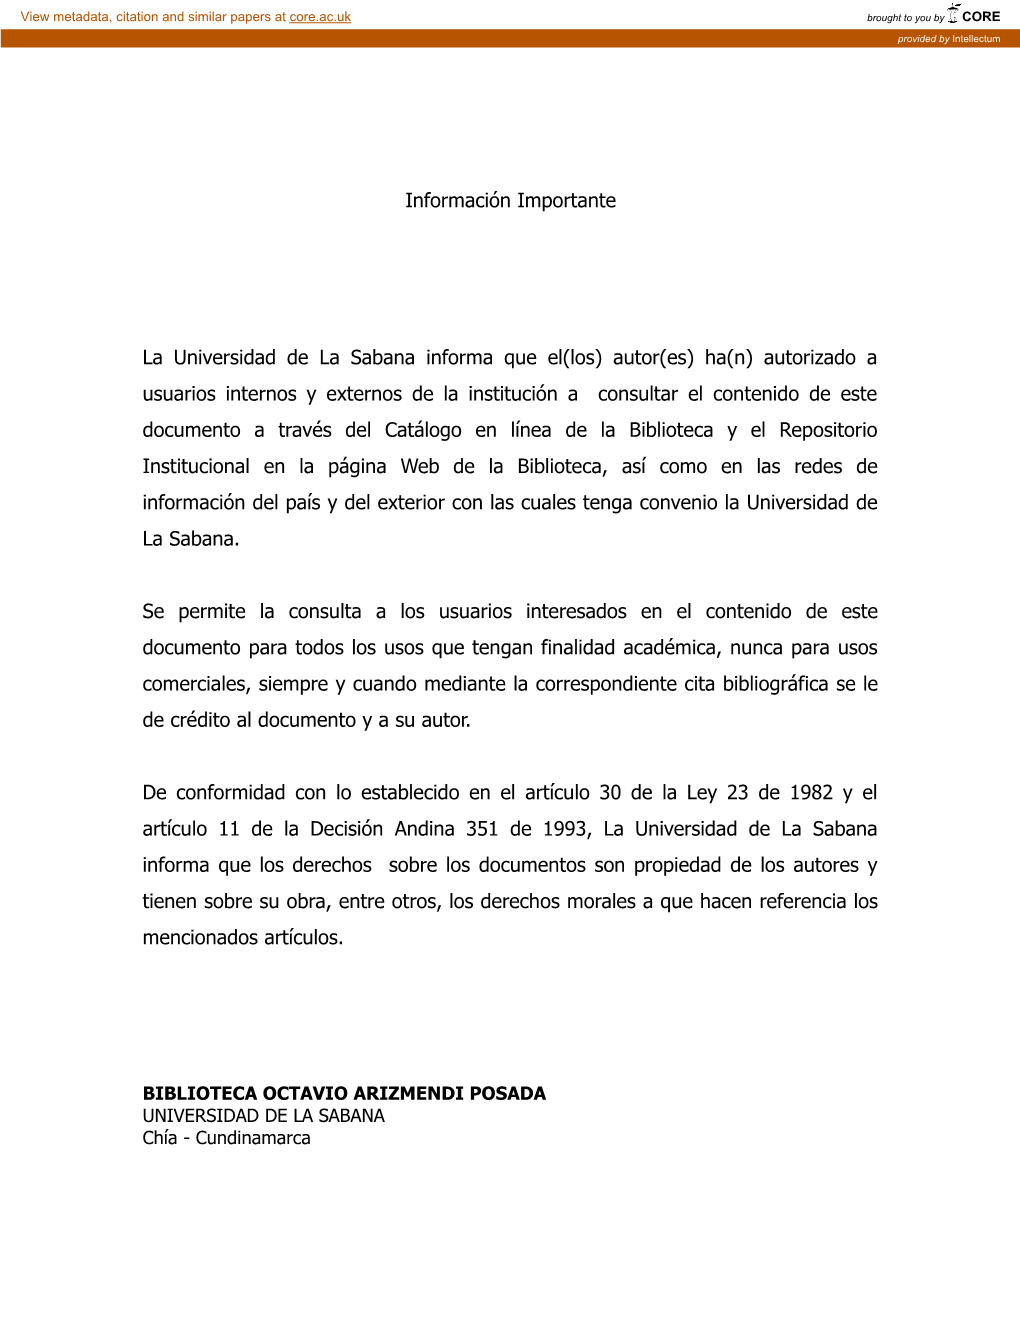 Información Importante La Universidad De La Sabana